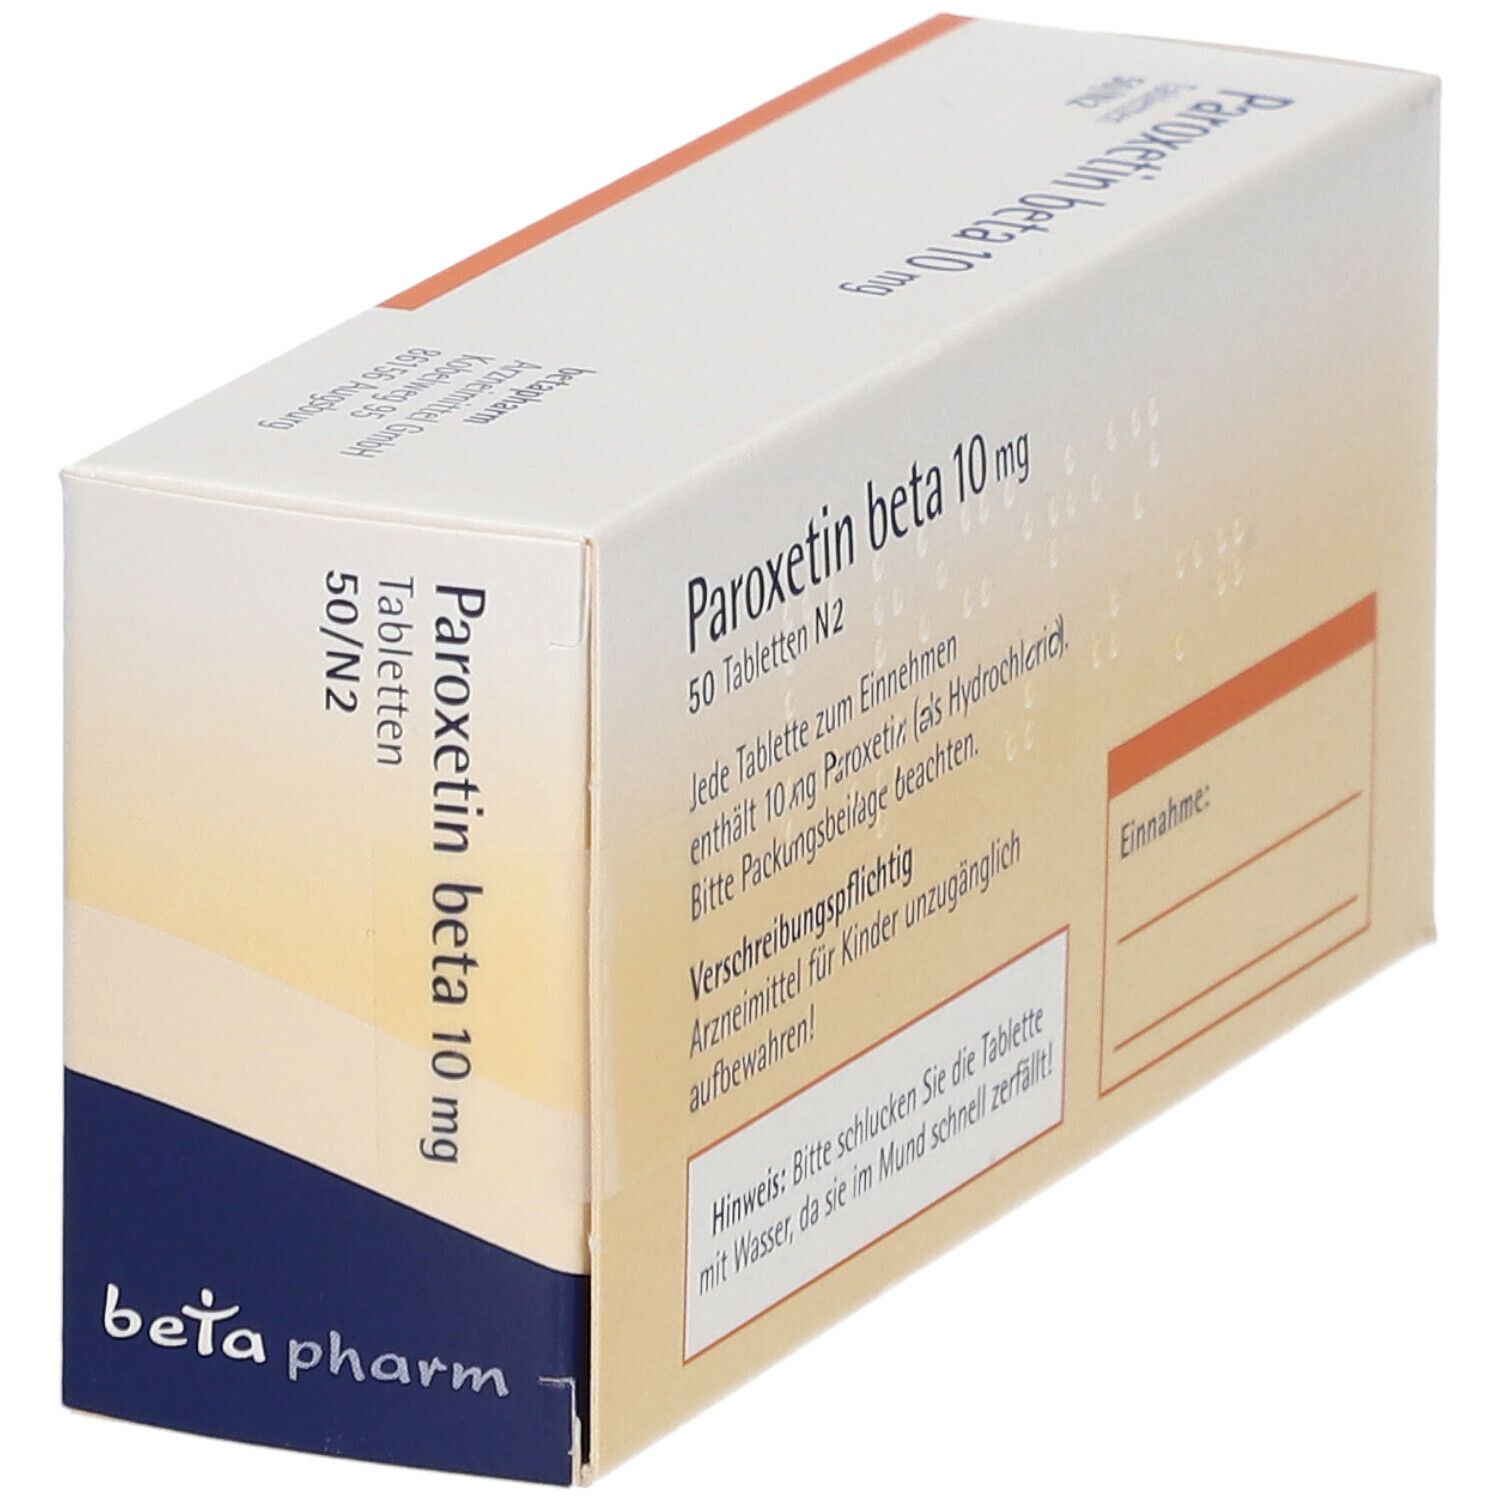 Paroxetin beta 10 mg